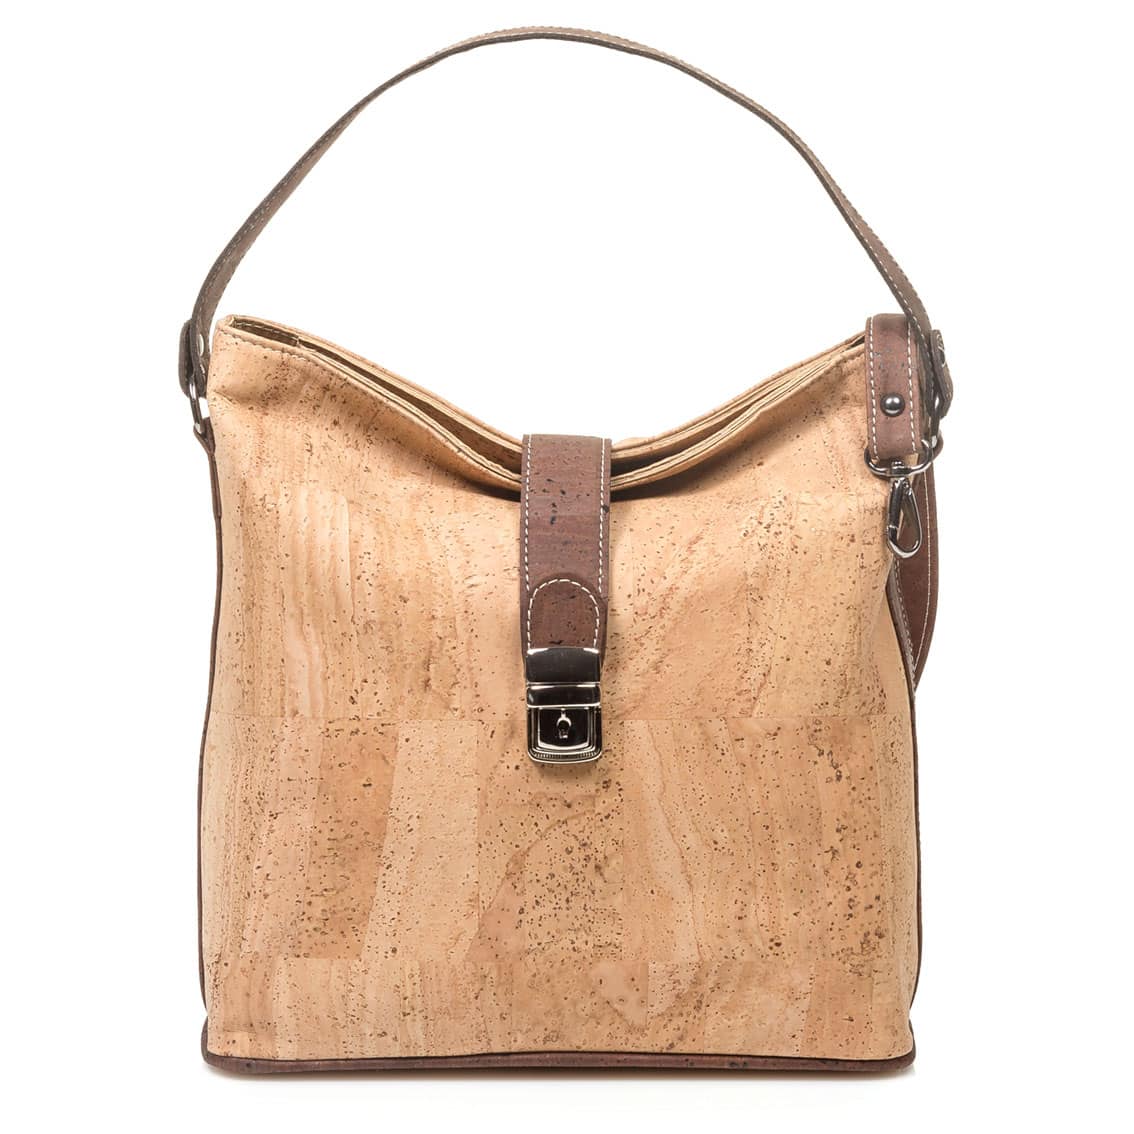 Handtasche «Style» aus Kork